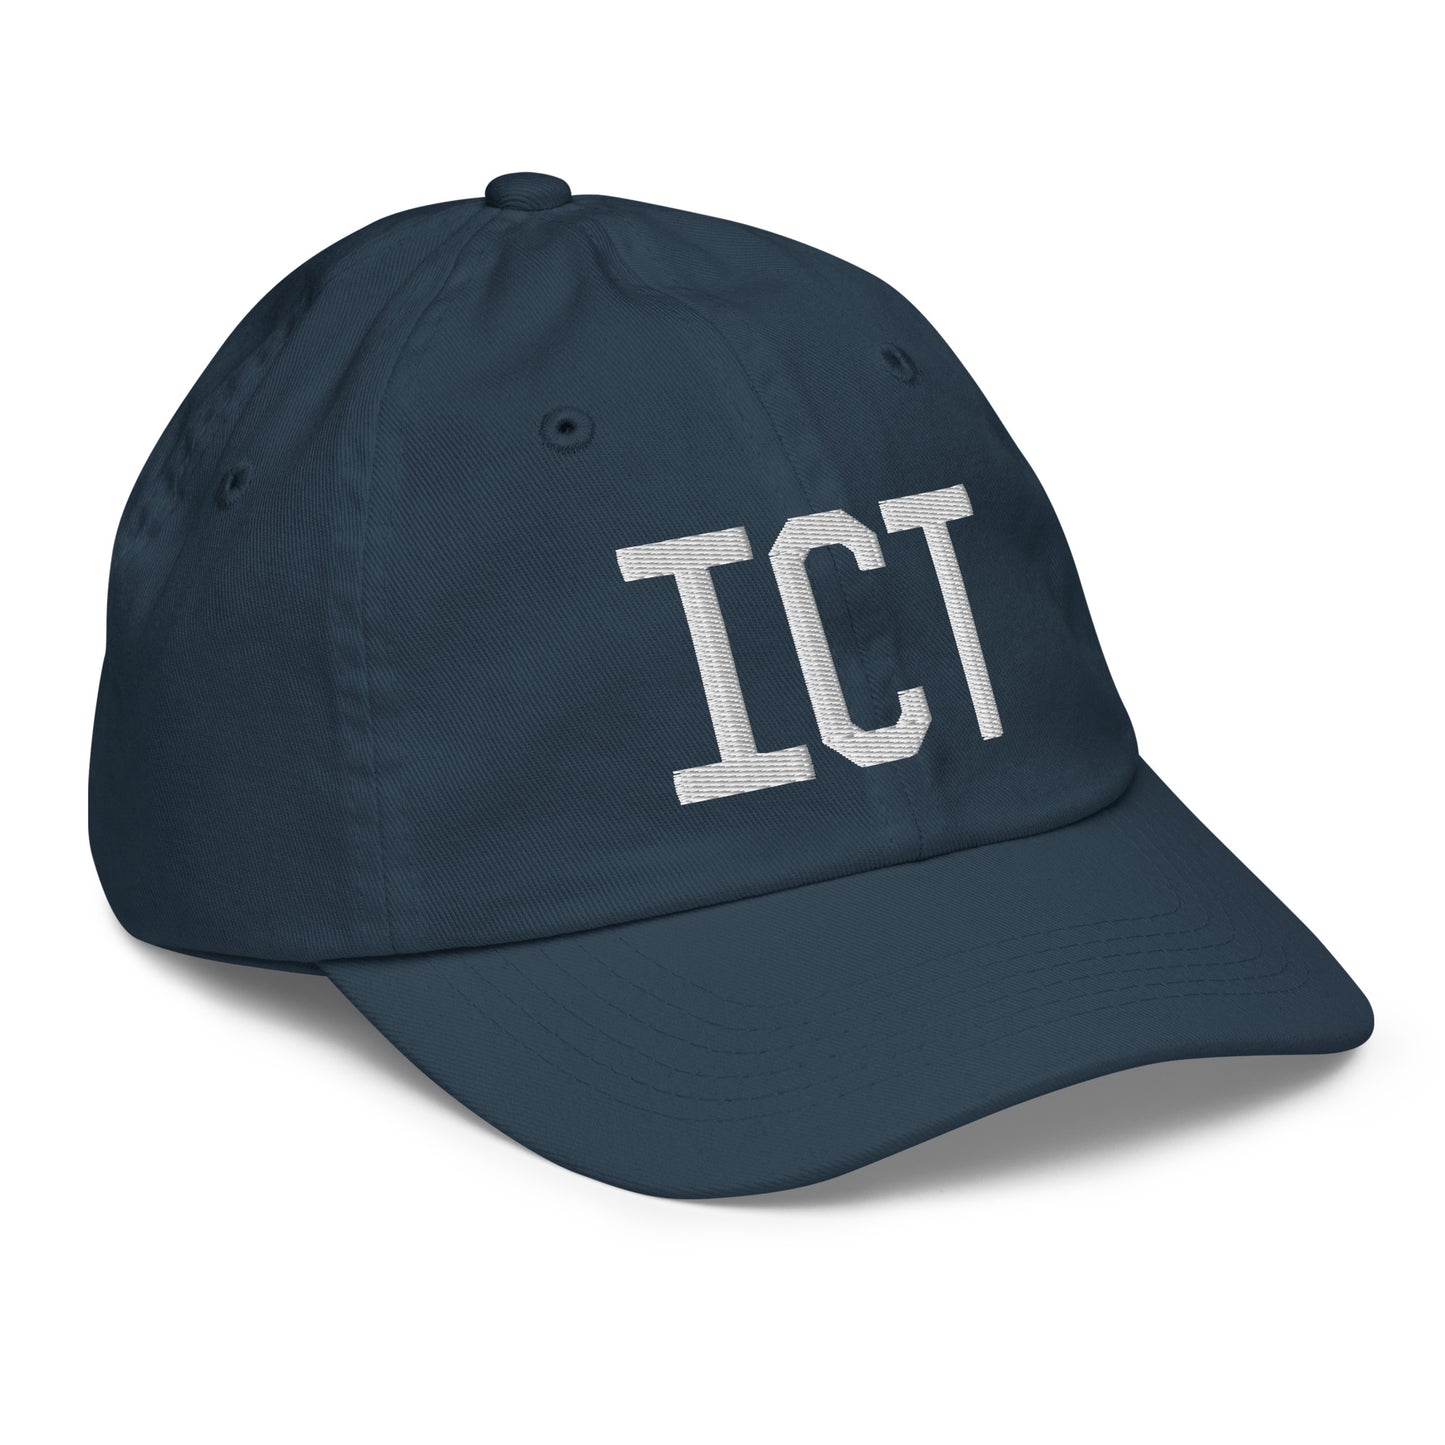 Airport Code Kid's Baseball Cap - White • ICT Wichita • YHM Designs - Image 15